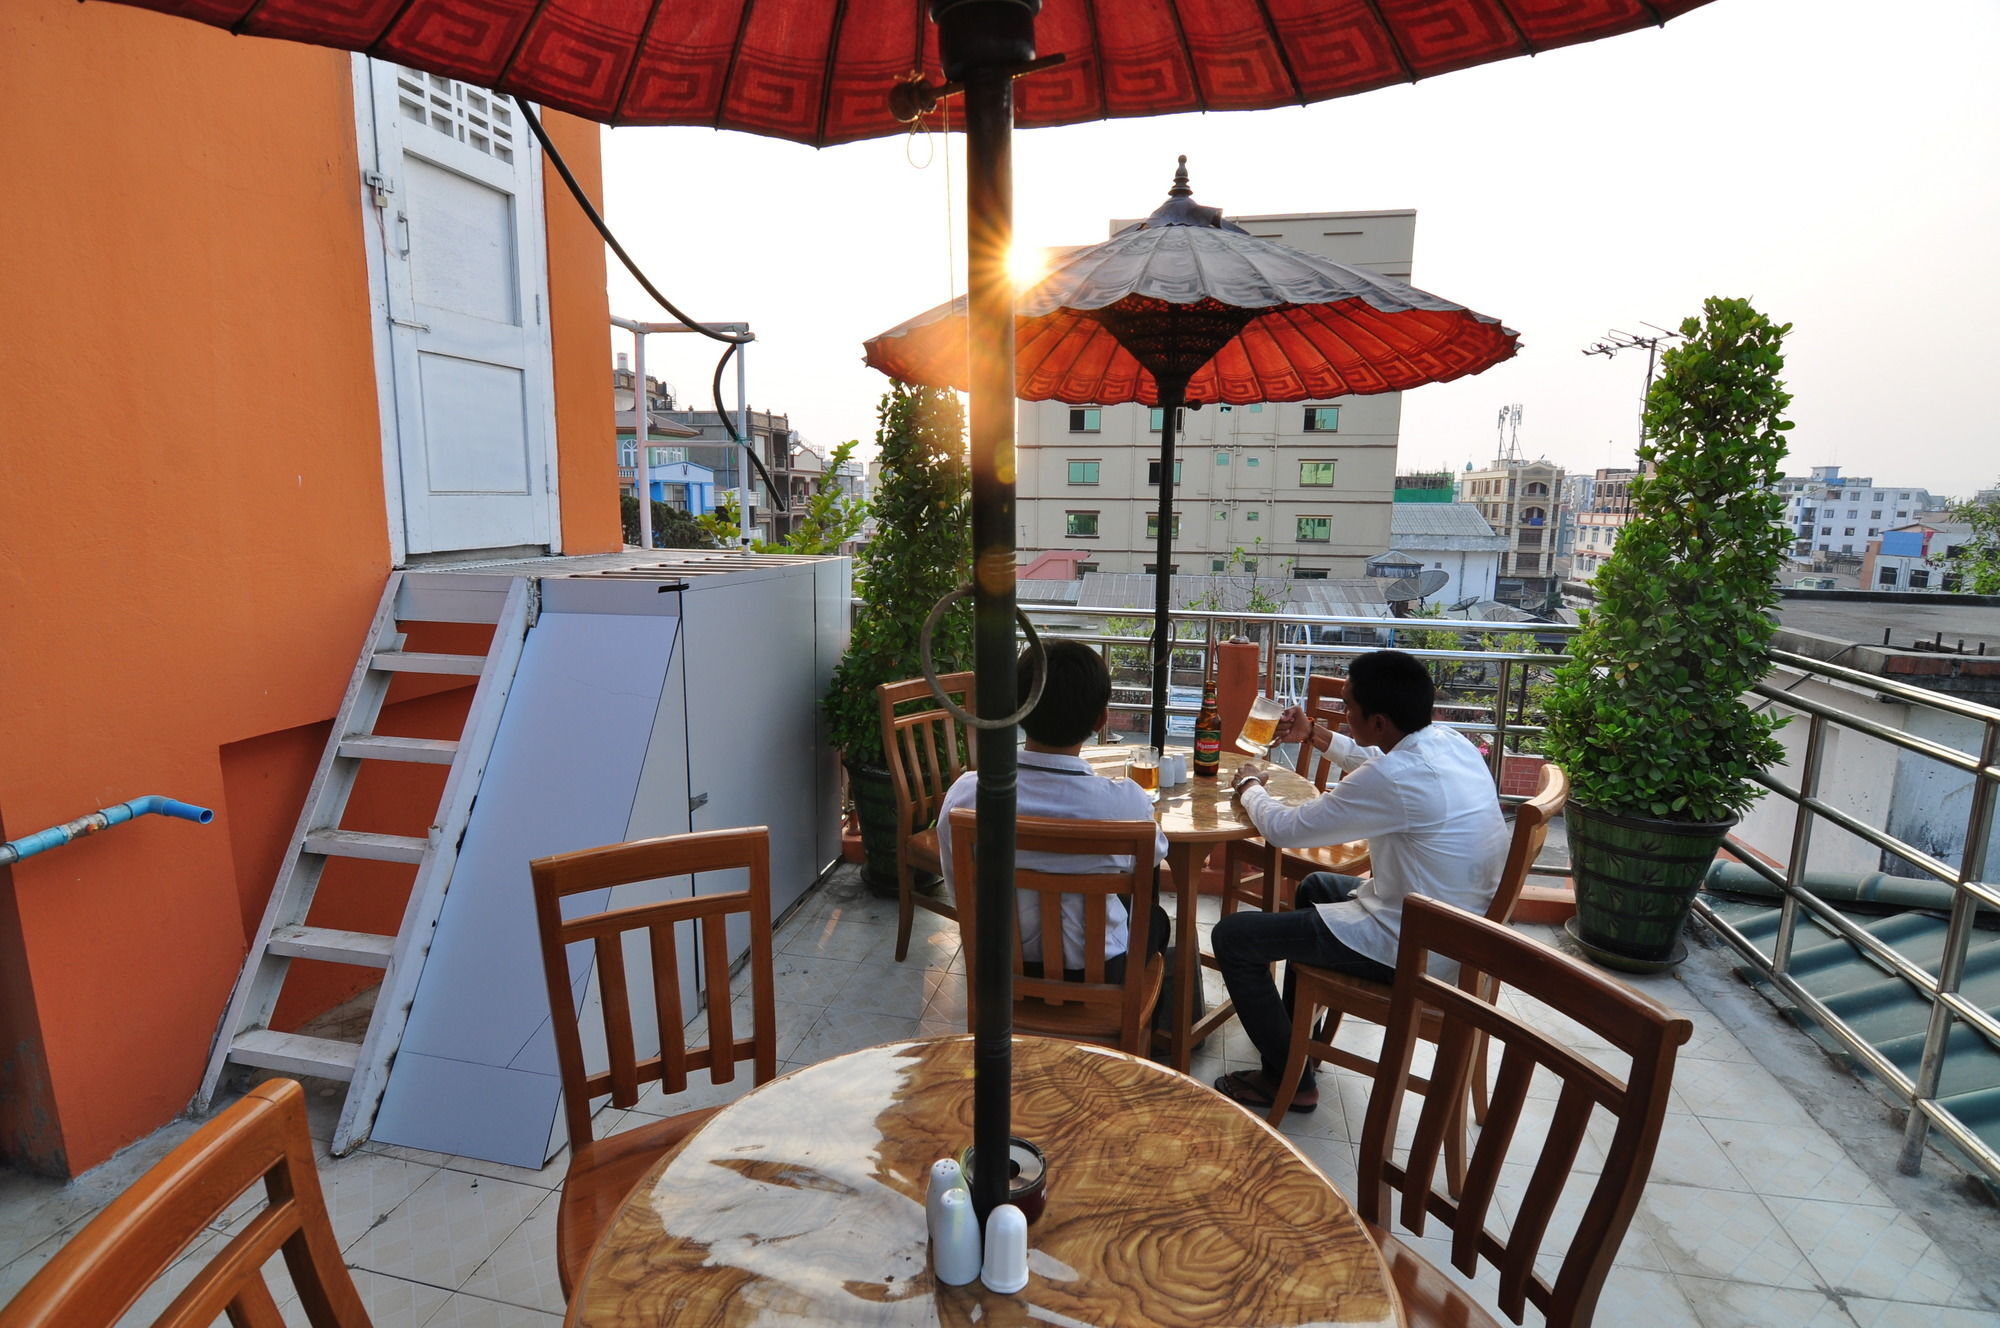 M3 @ Sun Winner Hotel Mandalay Exterior foto